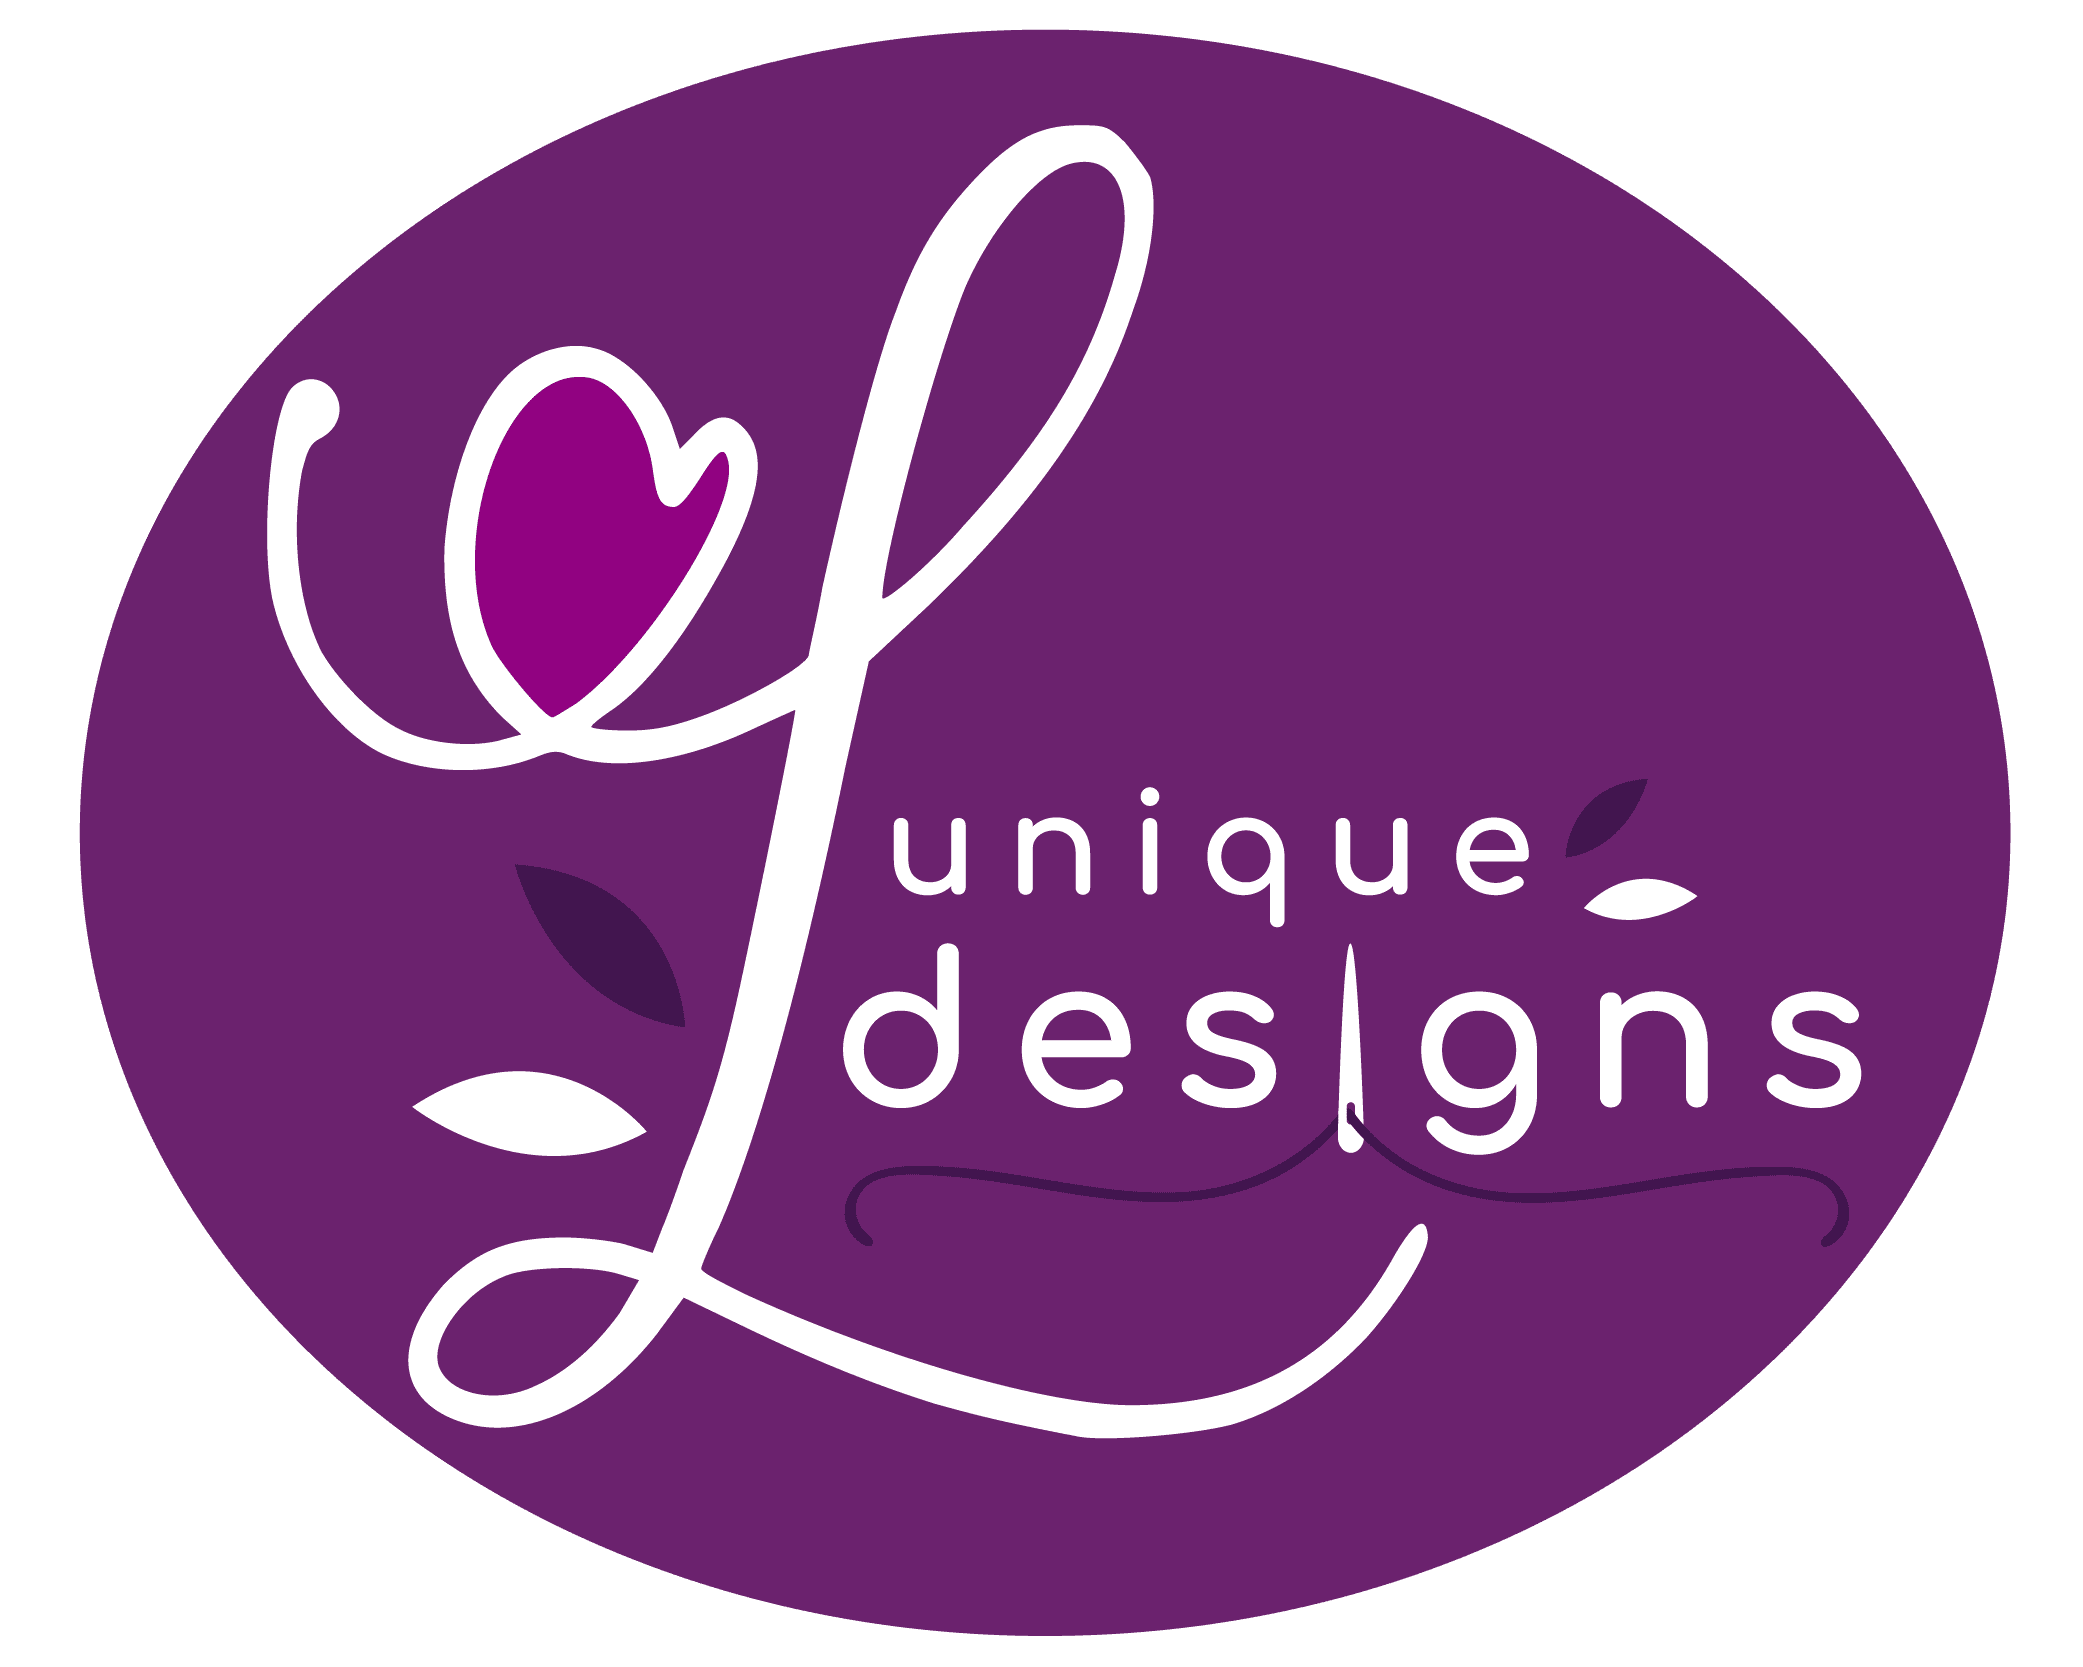 lunique designs logo final full 1